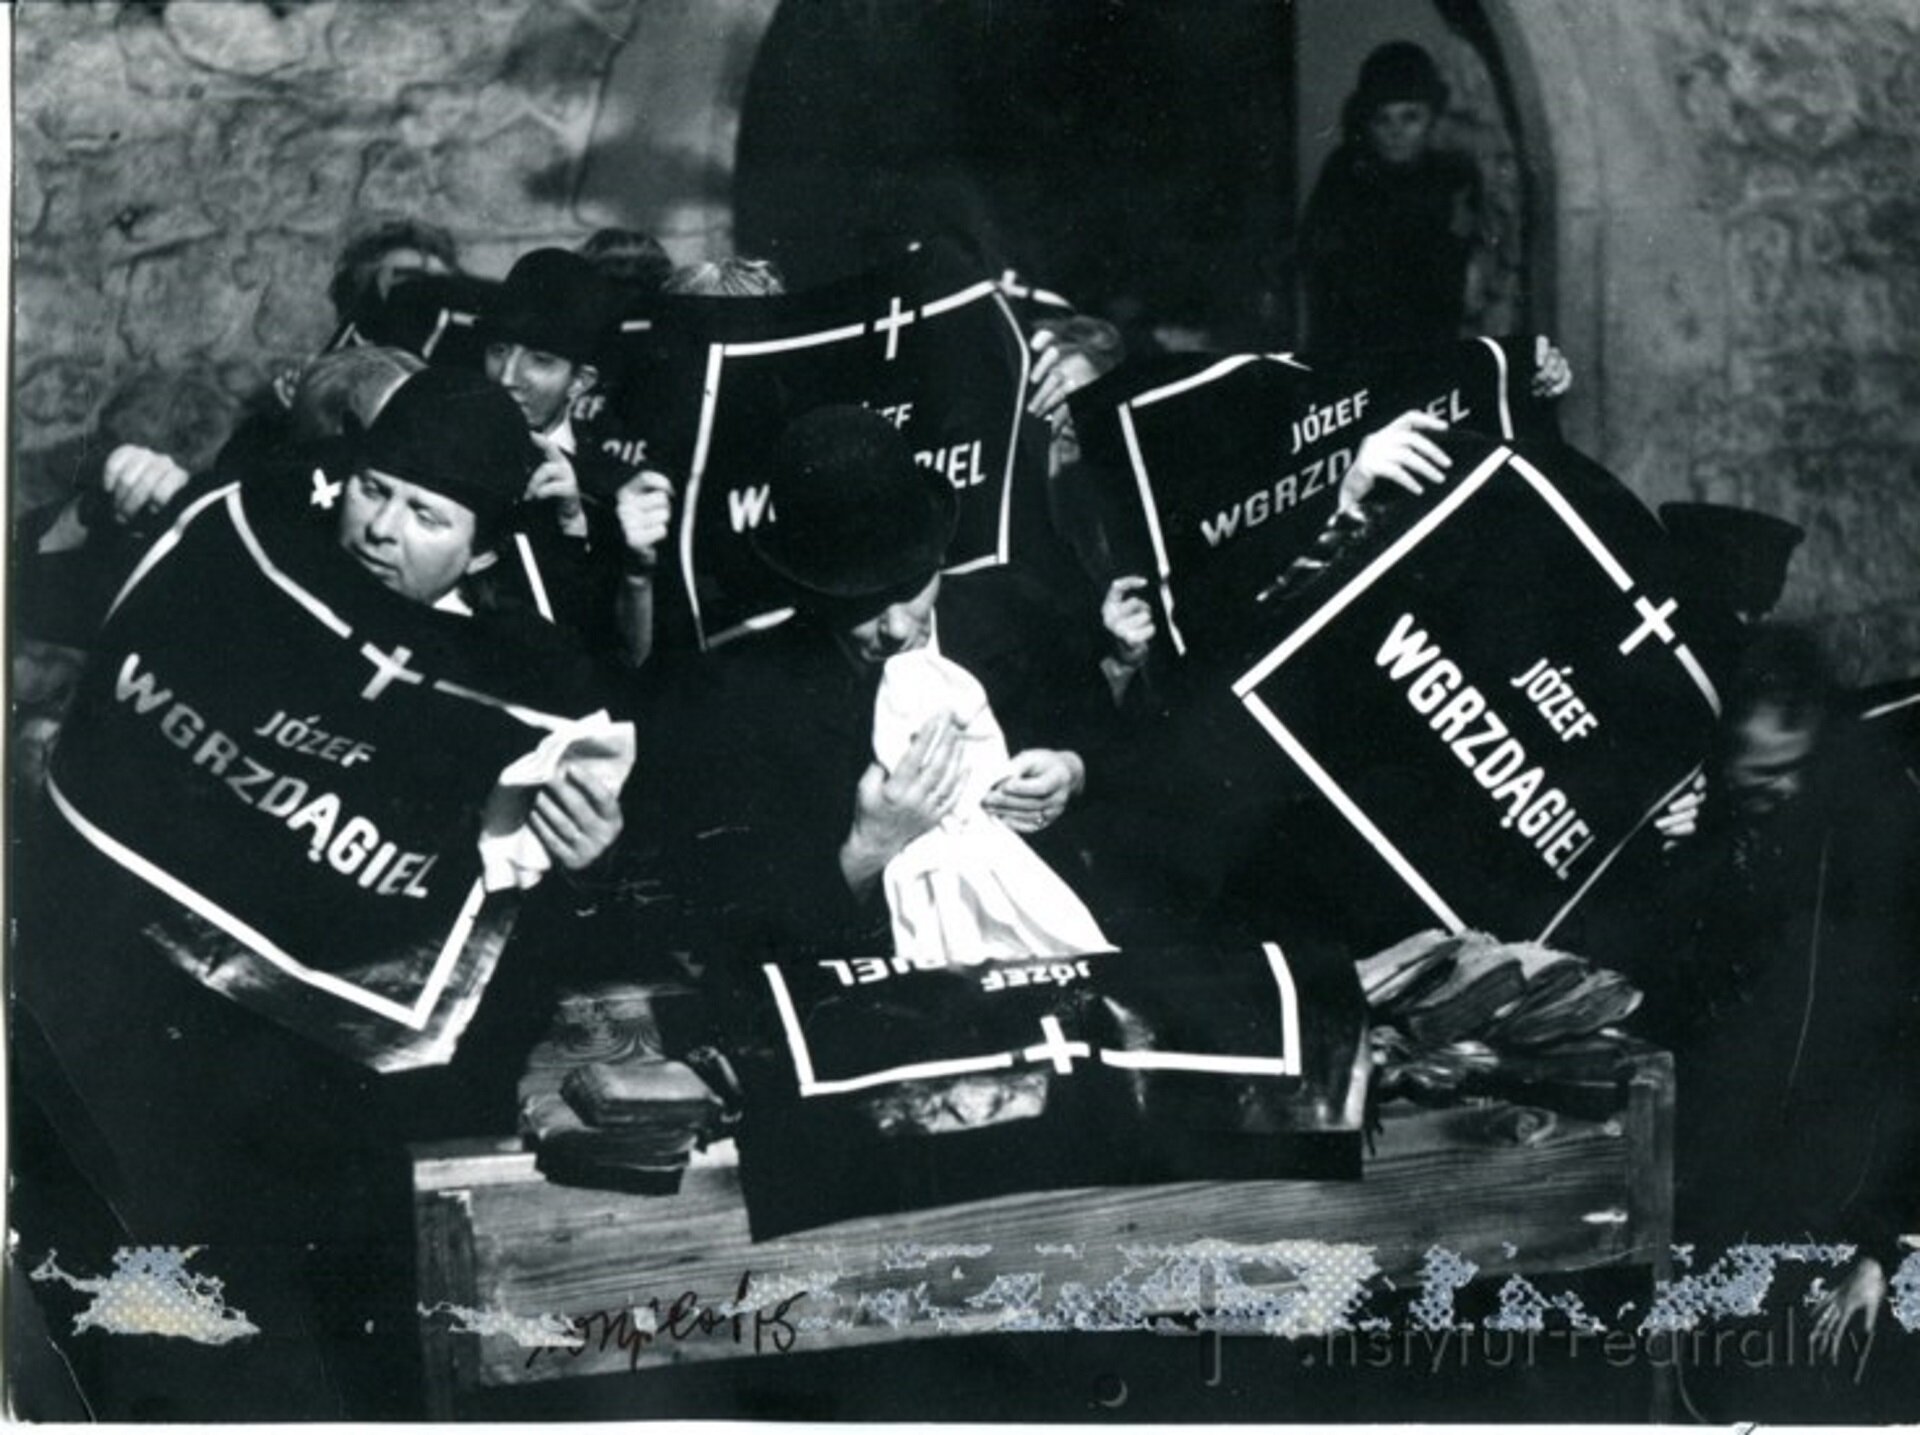 Ilustracja przedstawia czarno-białą fotografię, która prezentuje aktorów na scenie, ubrani są wszyscy na czarno, mają smutne miny. Trzymają w ręce nekrolog na czarnym papierze białą czcionką, tekst: Józef Wgrzdągiel. Aktorzy odgrywali wolę w spektaklu „Umarła klasa”.